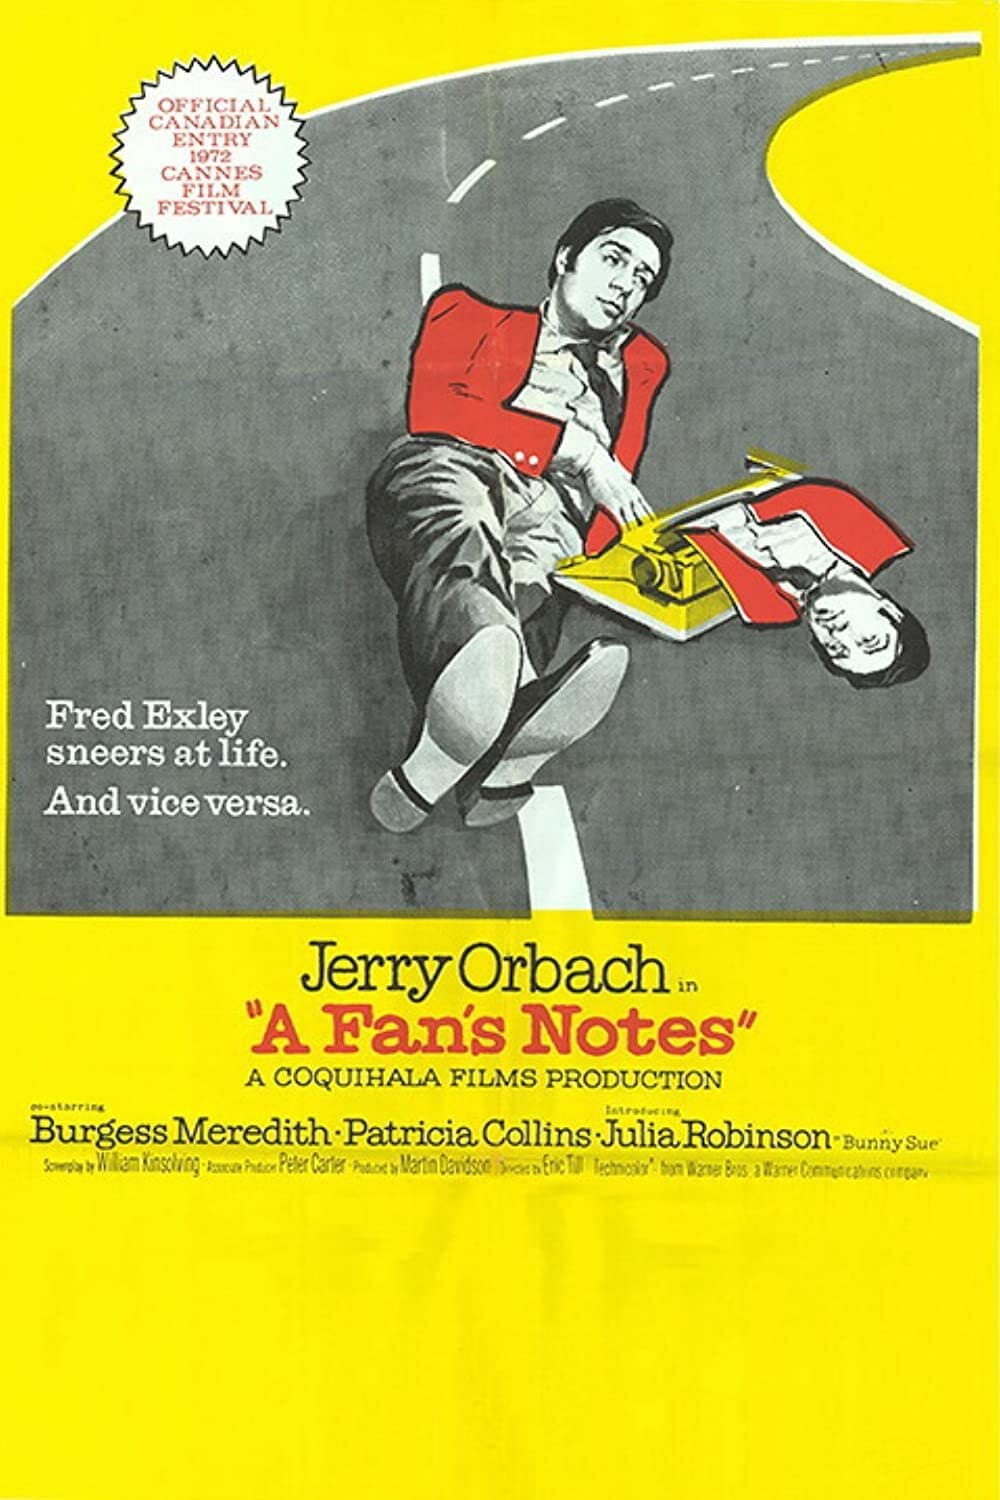 A Fan's Notes (1972)